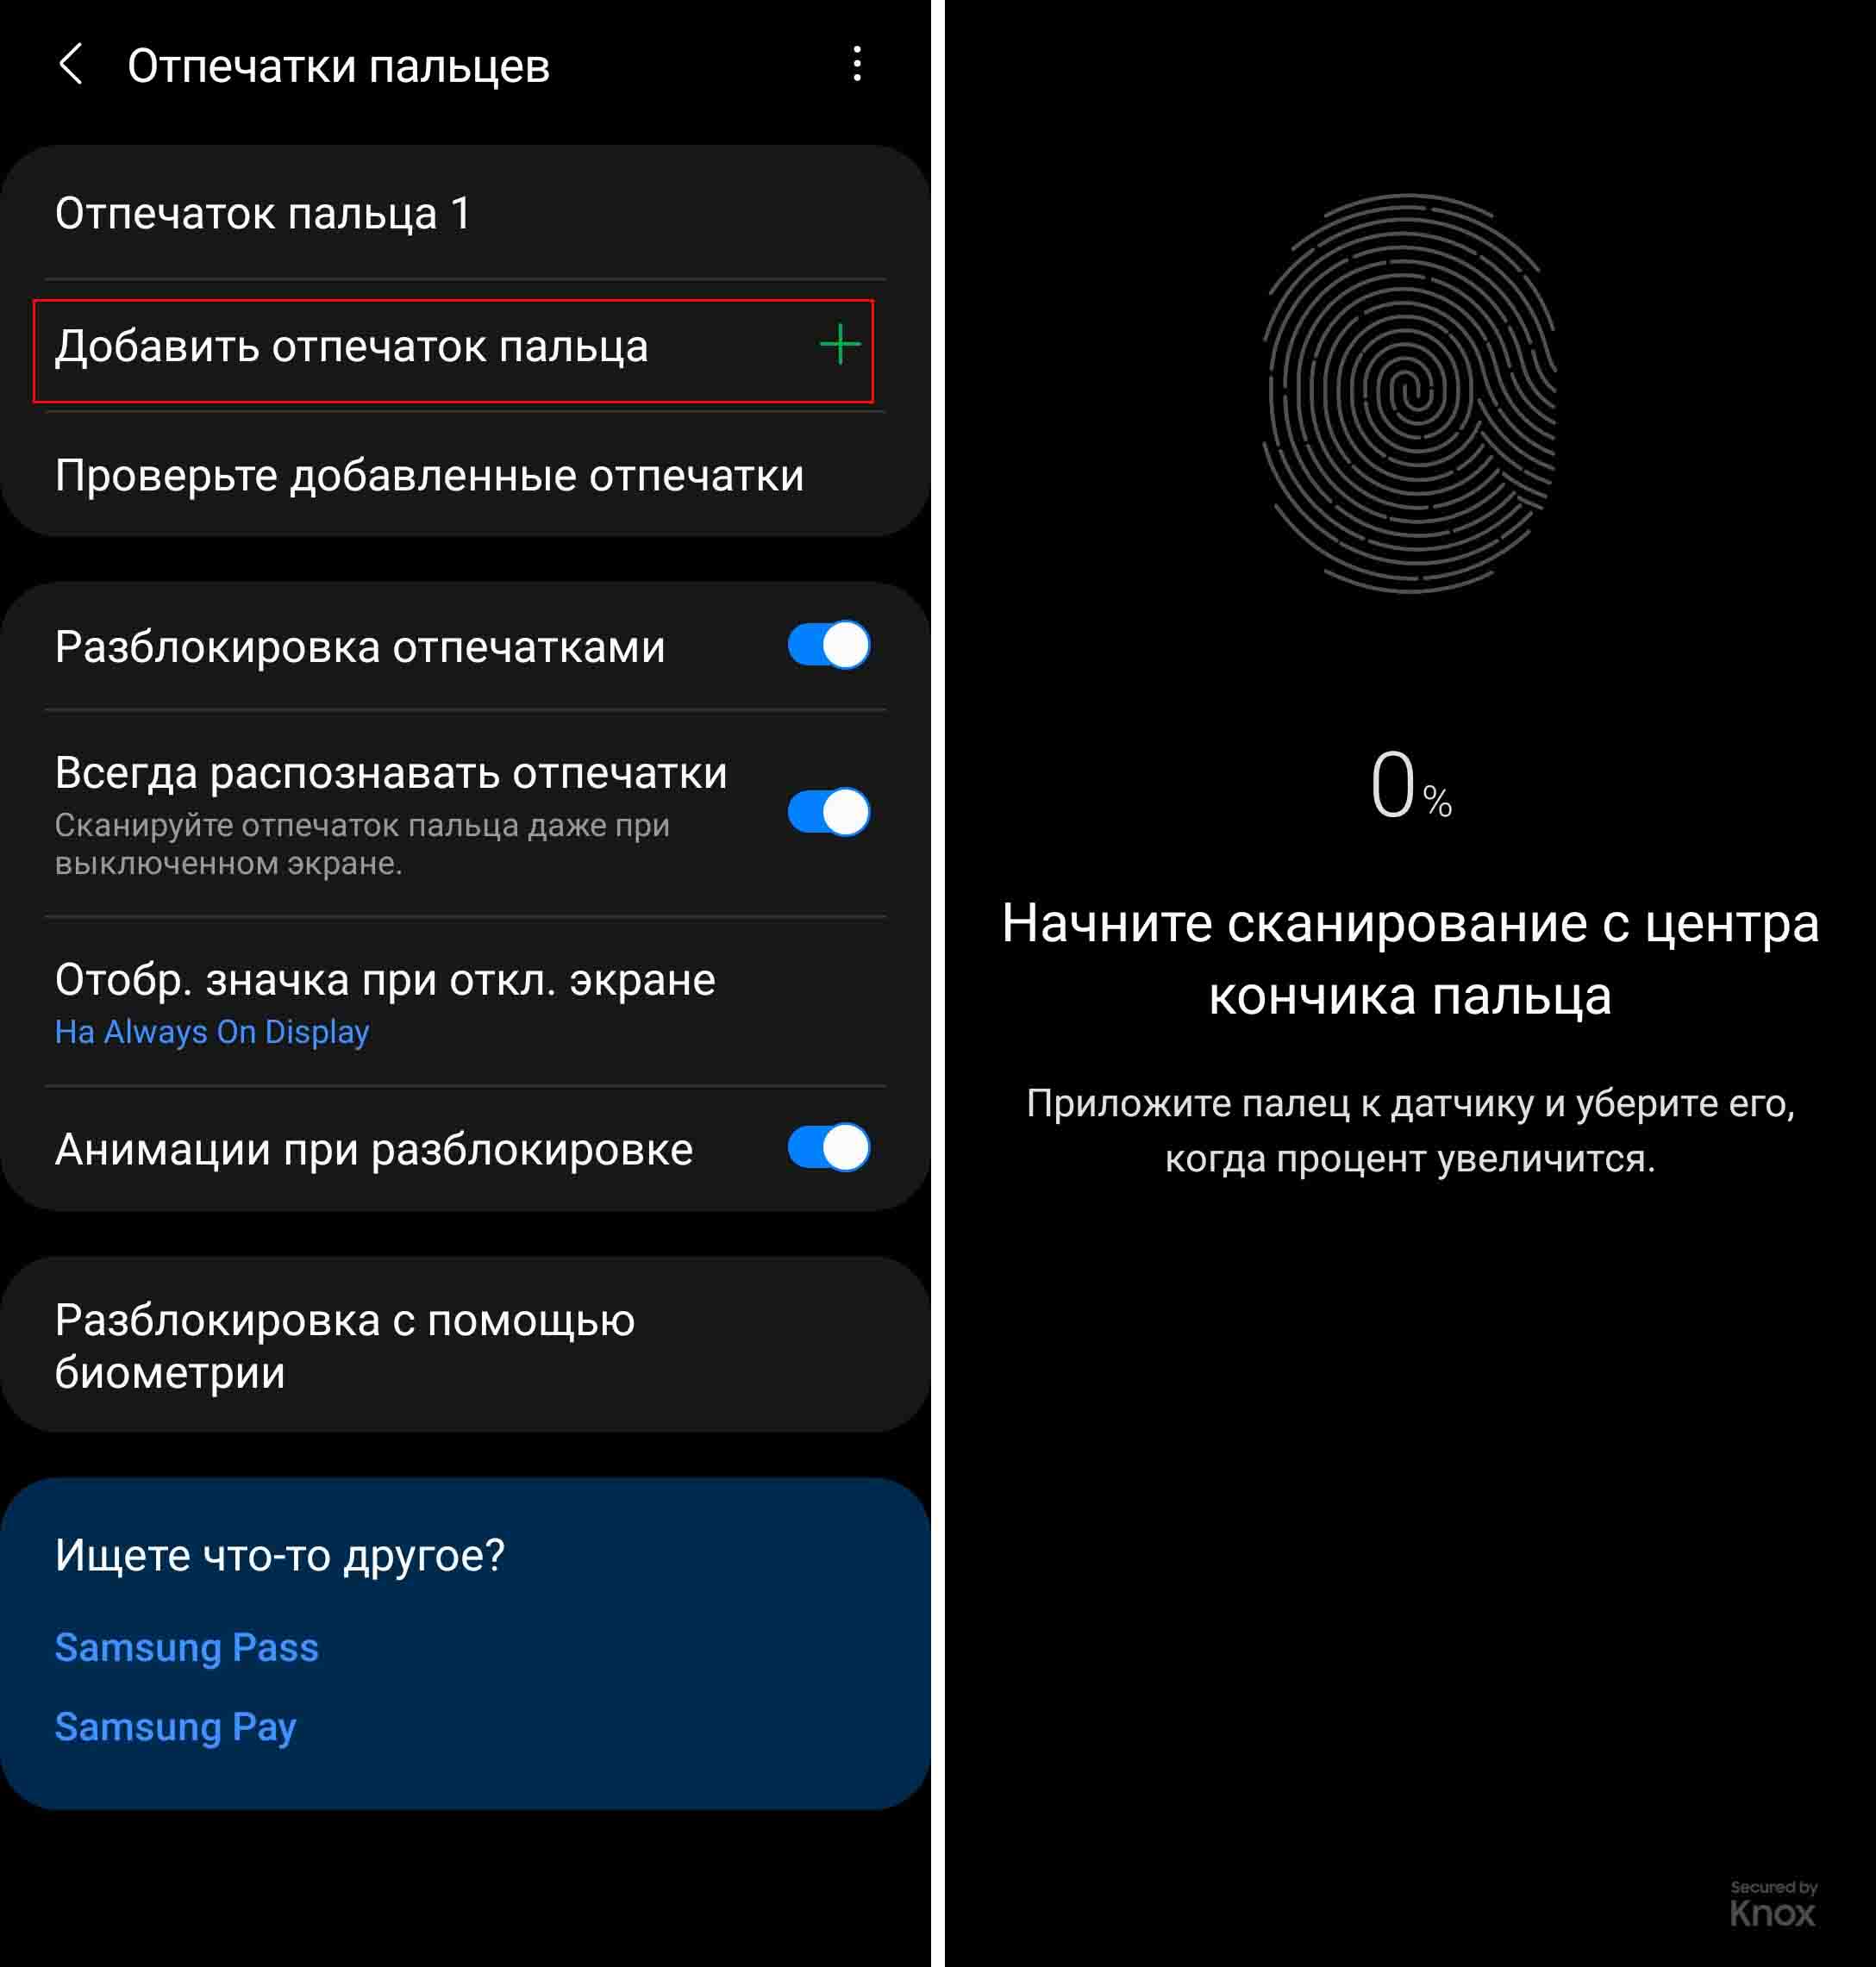 Как изменить пароль на Samsung Galaxy S9? - Pagb